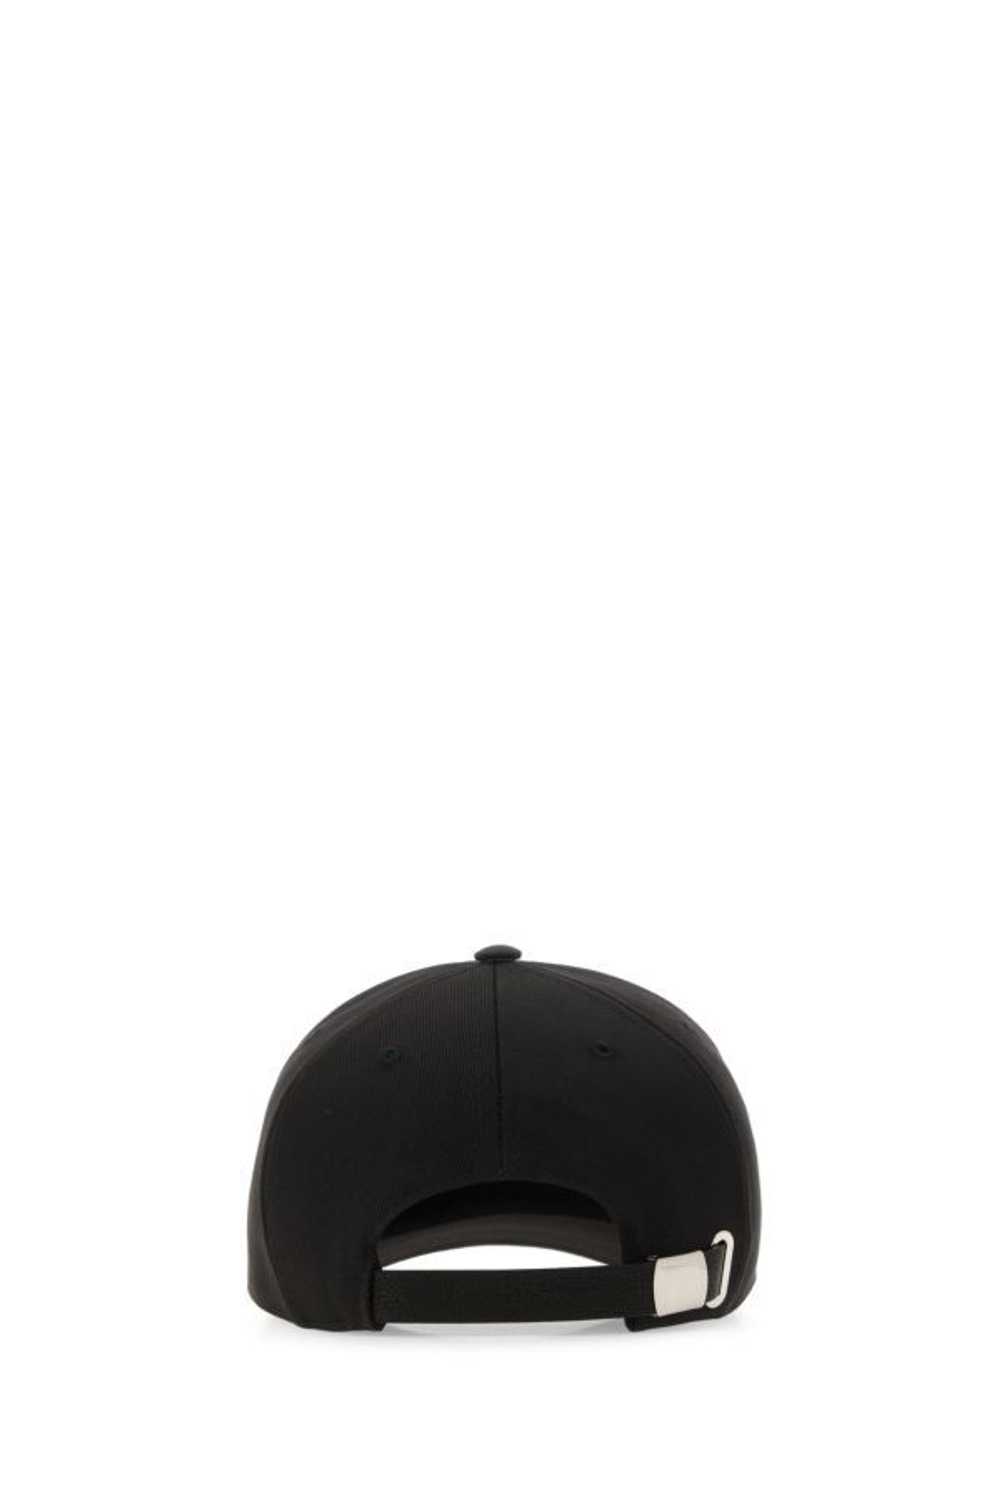 Alexander McQueen Black Cotton Baseball Cap - image 5